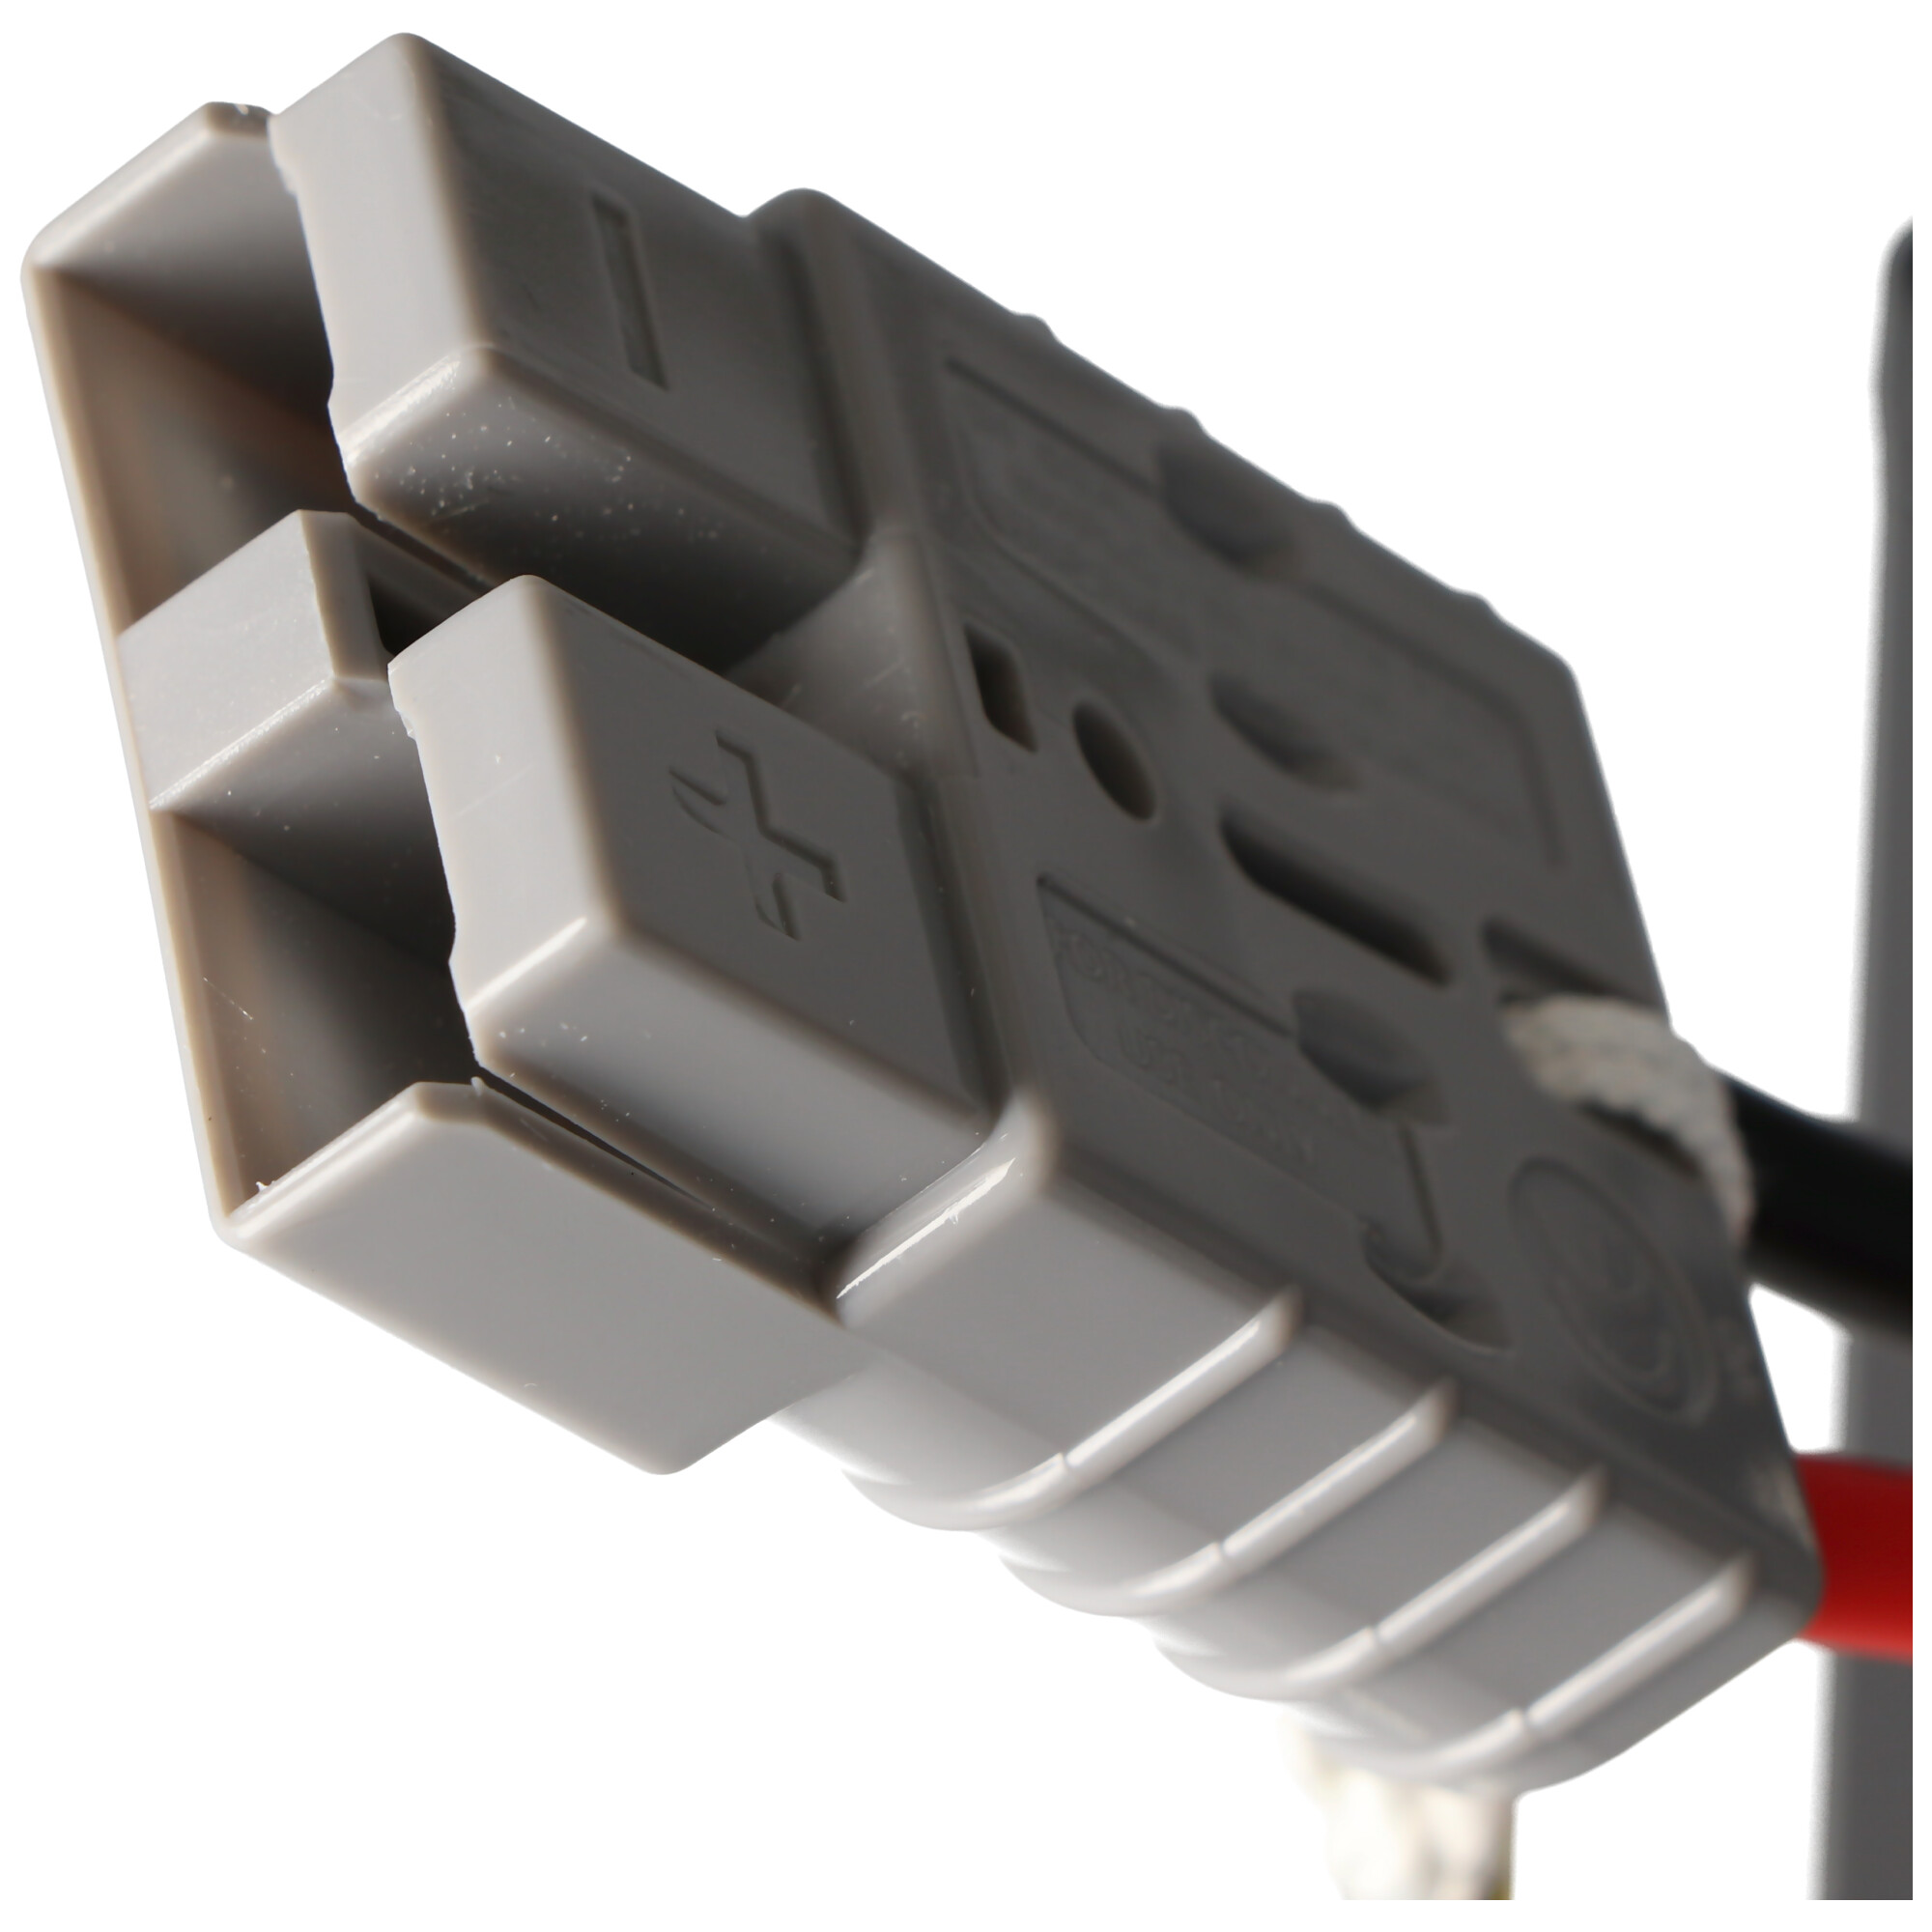 USV Ersatz-Akku, kompatibel zu APC-RBC7, SU1000XLJ, SU1400, DLA1500I, etc. vormontiert mit Kabel und Stecker, Akkuset bestehend aus 2x 2xGP12170